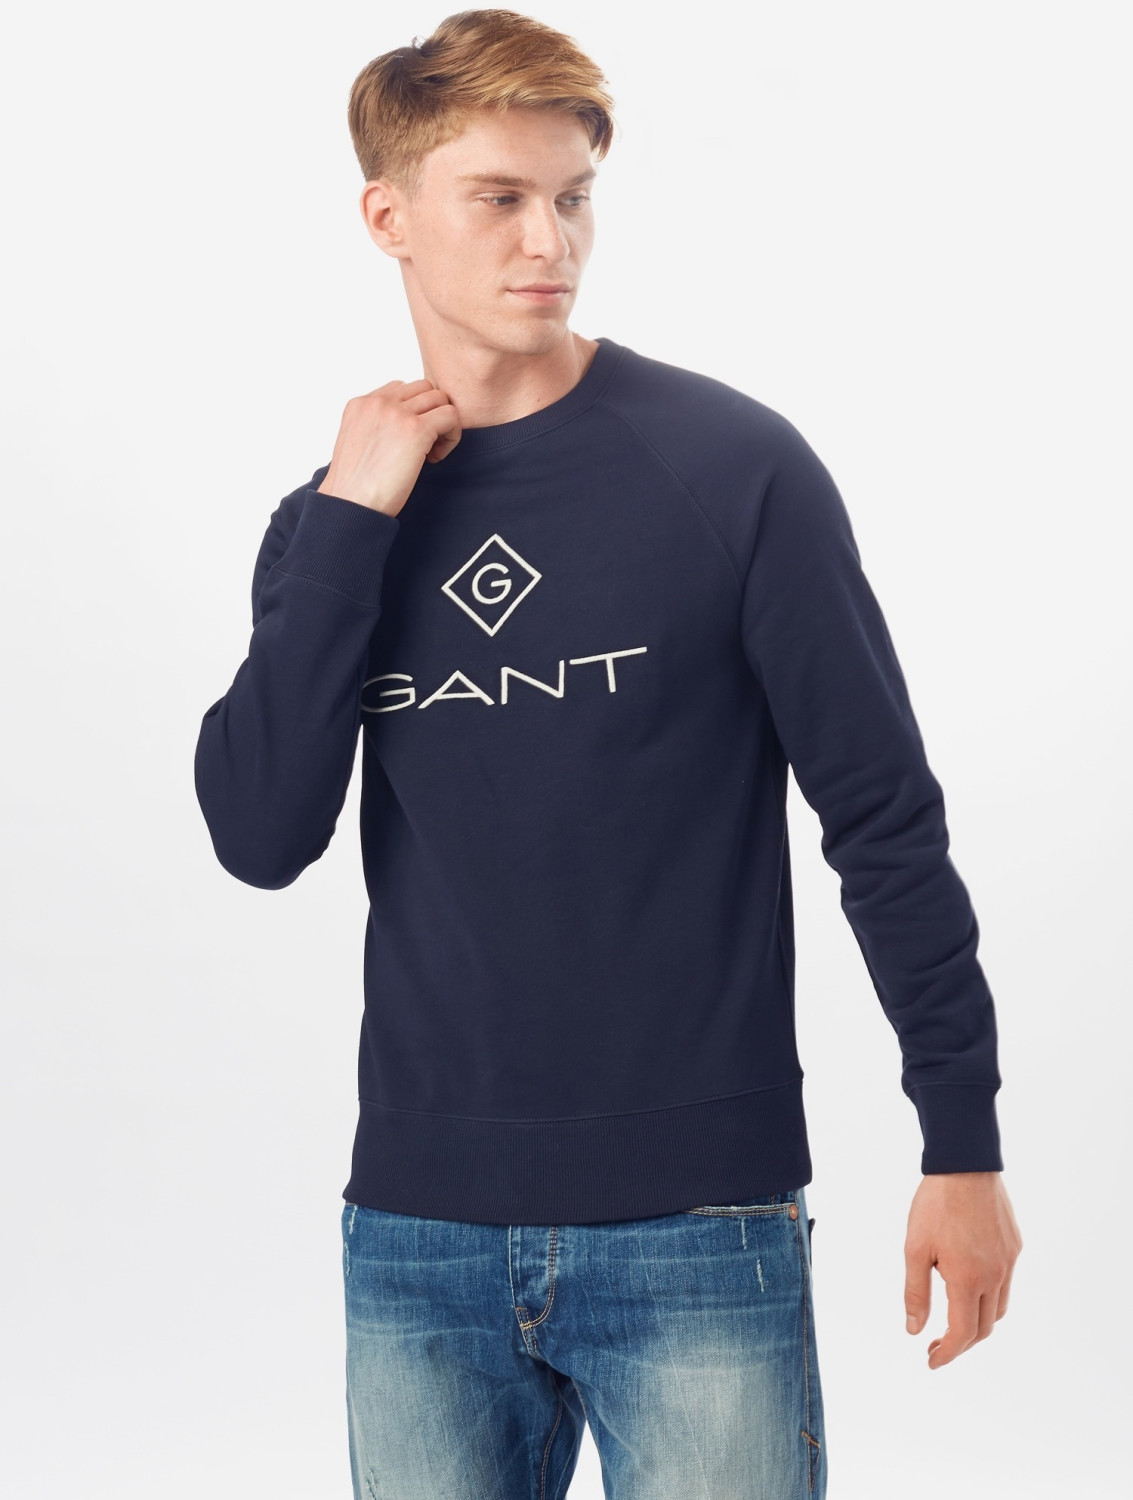 GANT Logo 64,94 Sweatshirt blue bei € Preisvergleich ab 2046062-433) evening ( 